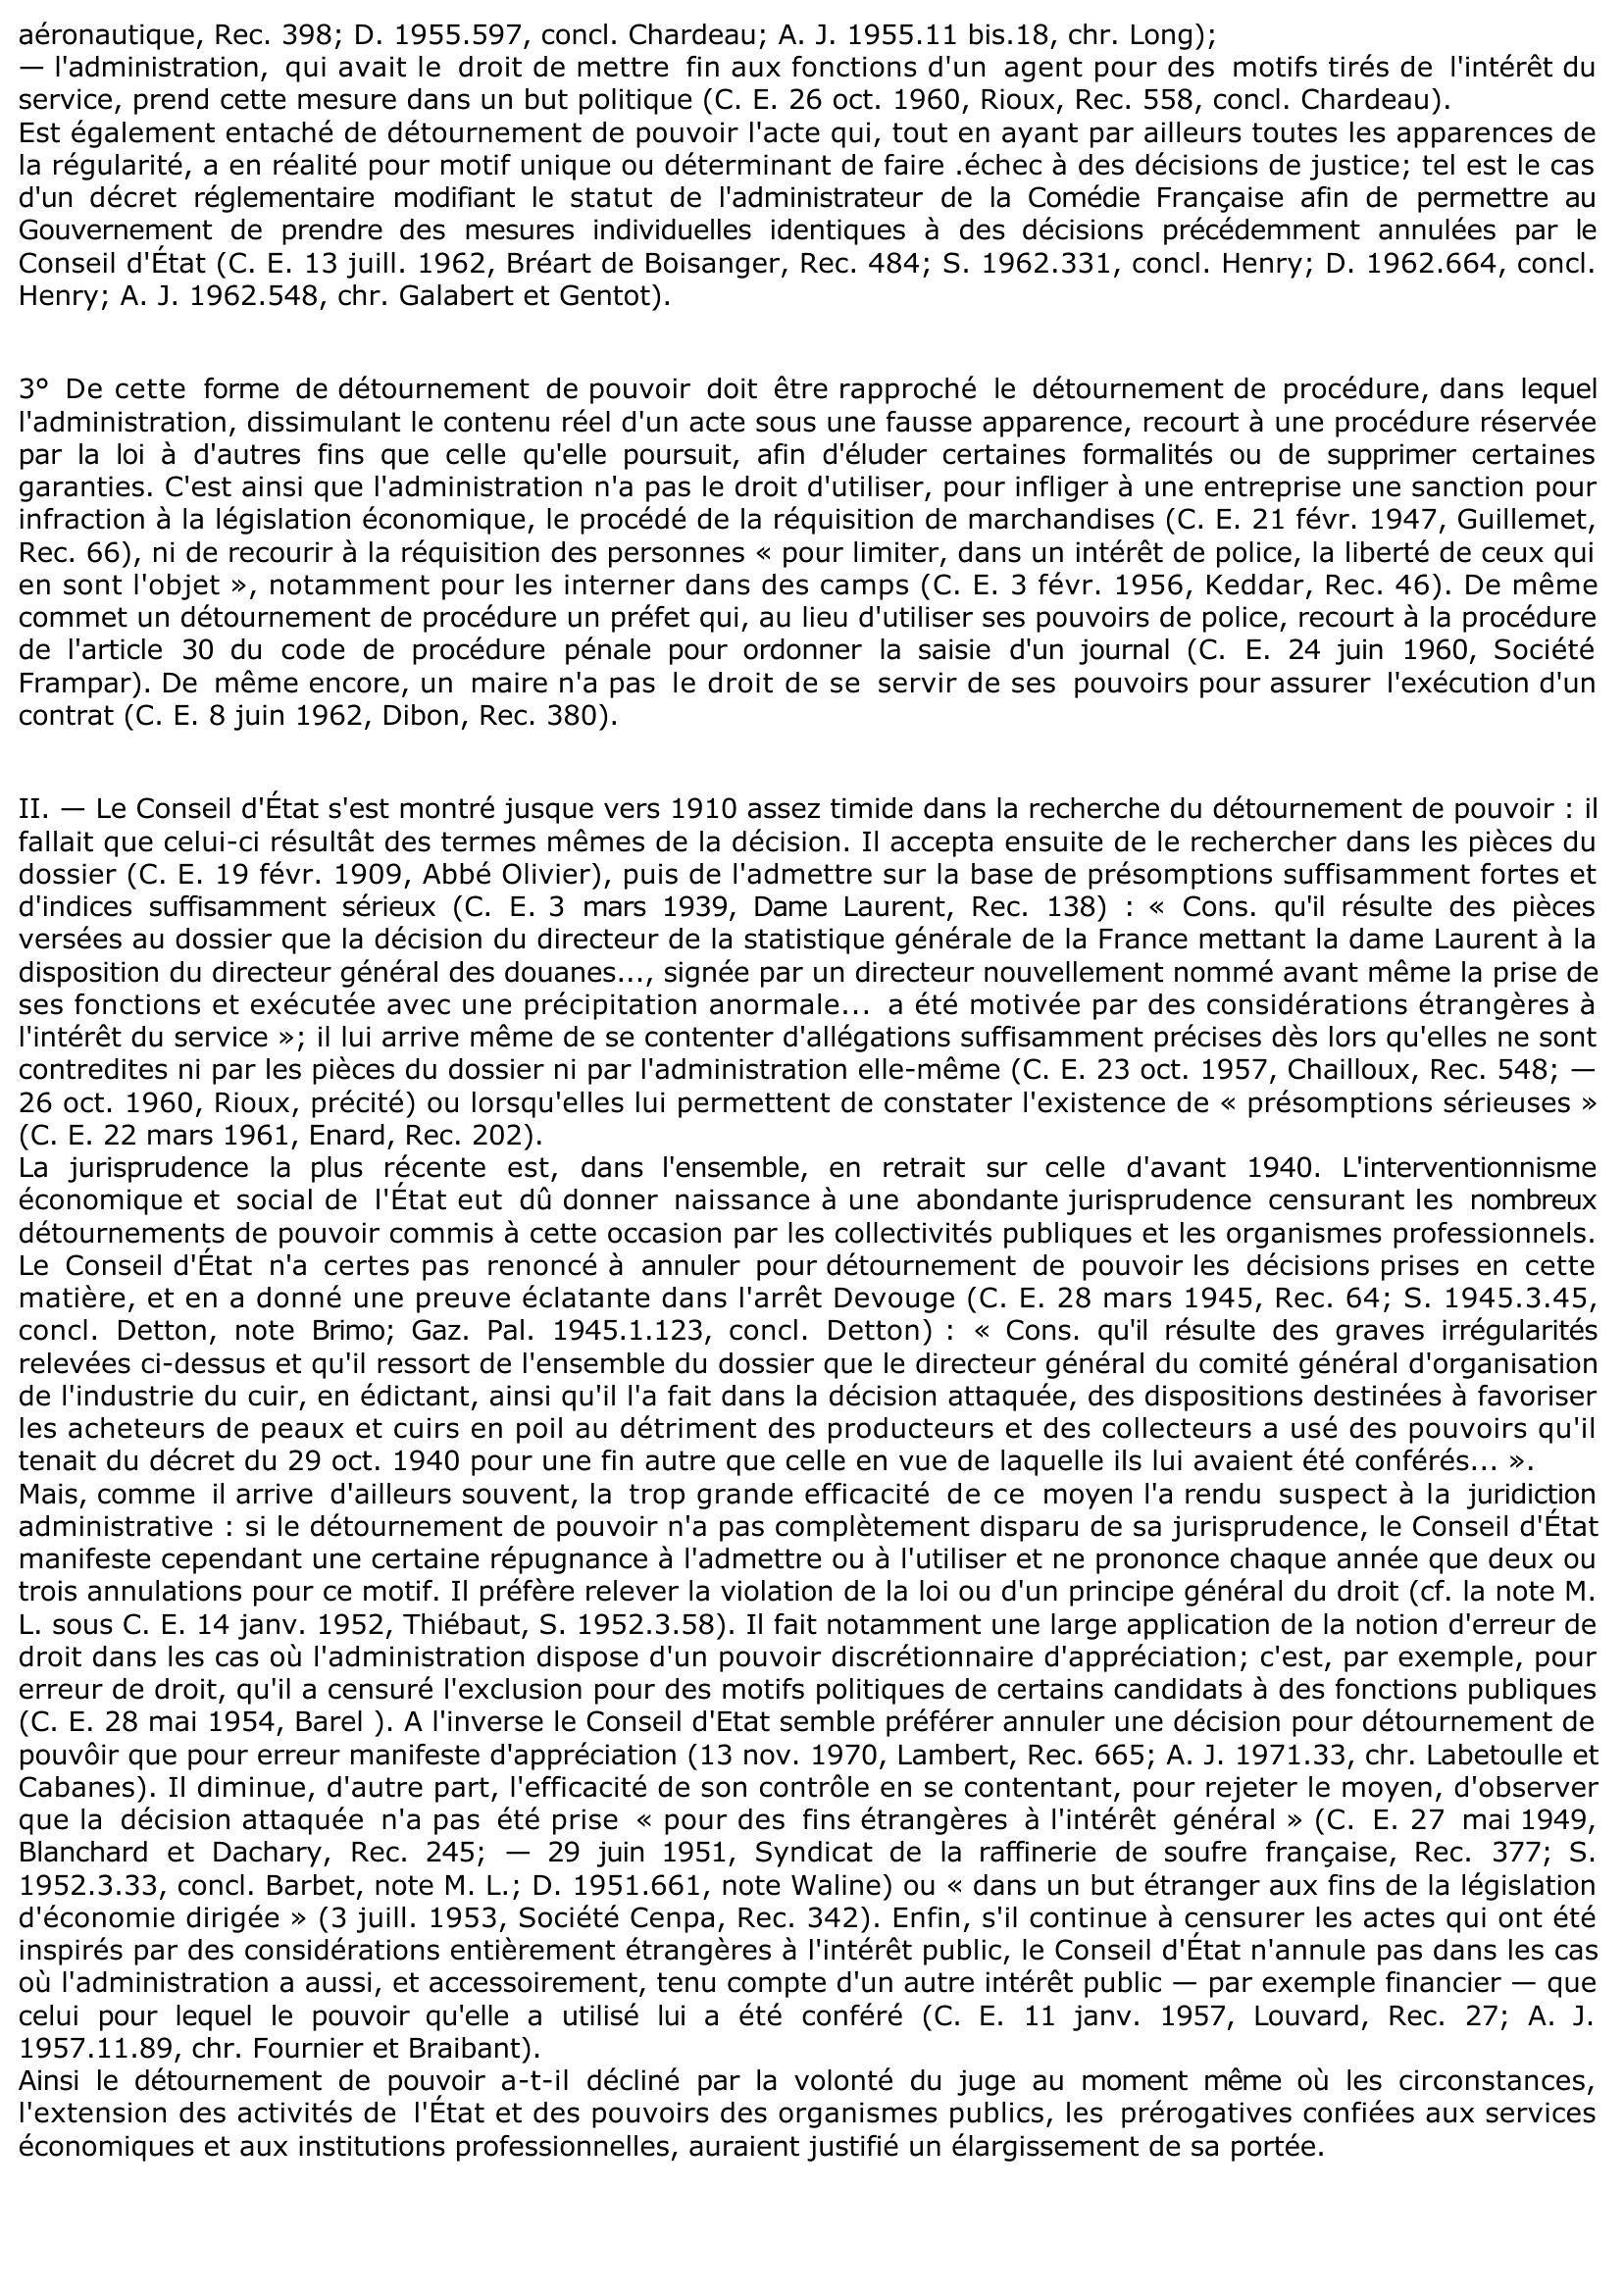 Prévisualisation du document MOYENS D'ANNULATION - DÉTOURNEMENT DE POUVOIR - C. E. 26 nov. 1875, PARISET, Rec. 934 - Commentaire d'arrêt.